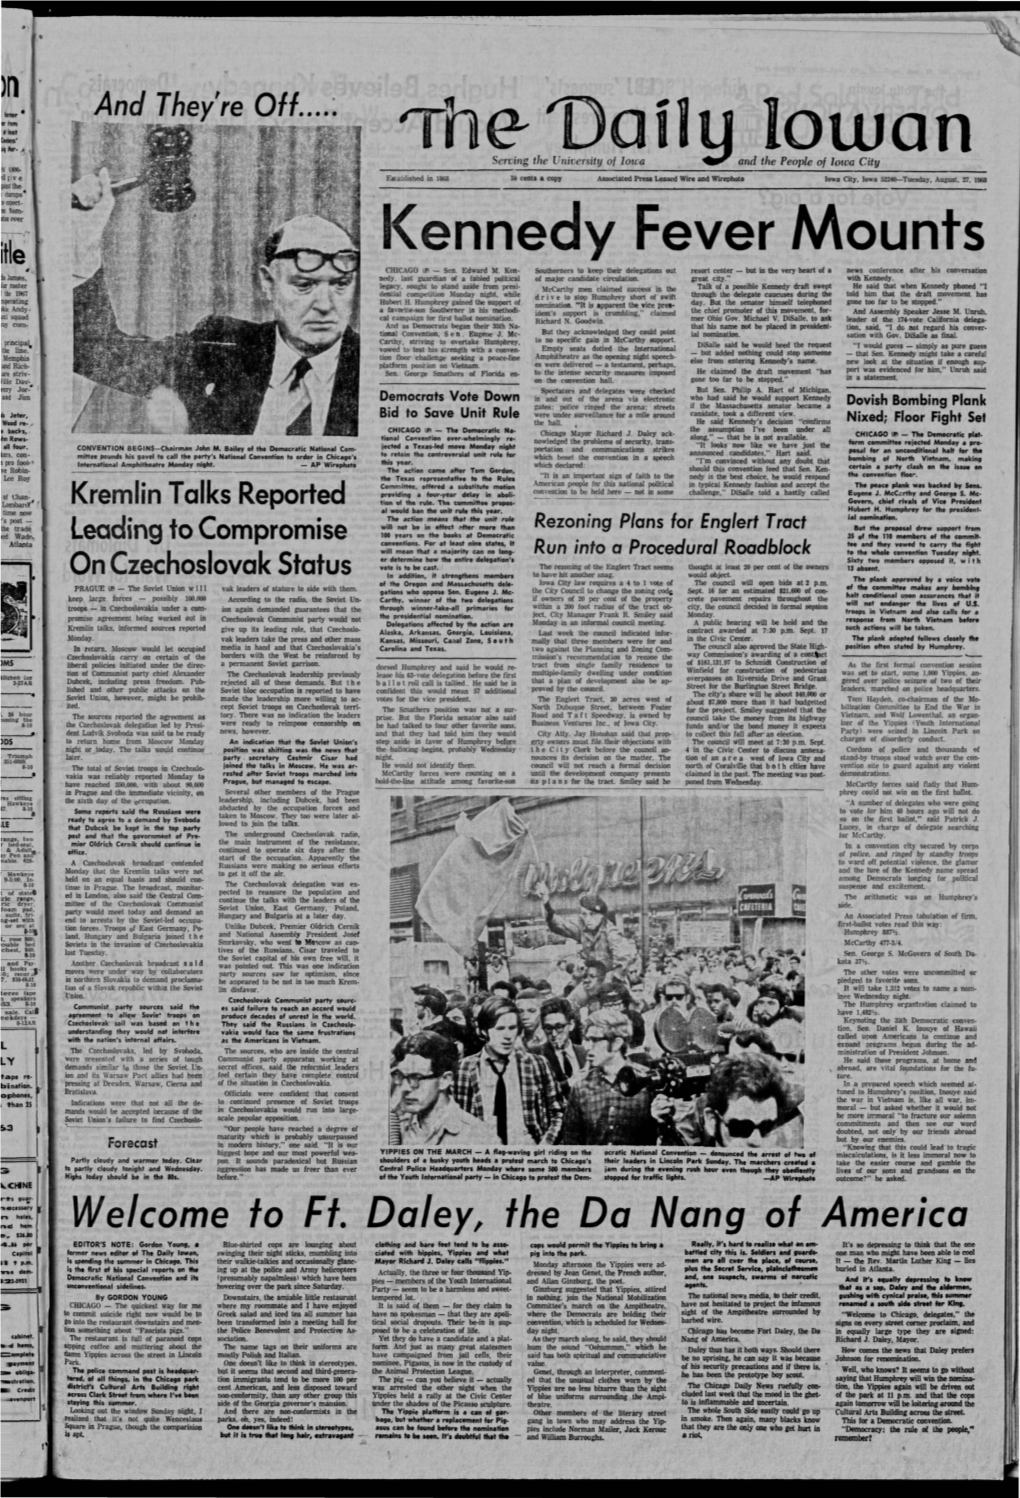 Daily Iowan (Iowa City, Iowa), 1968-08-27